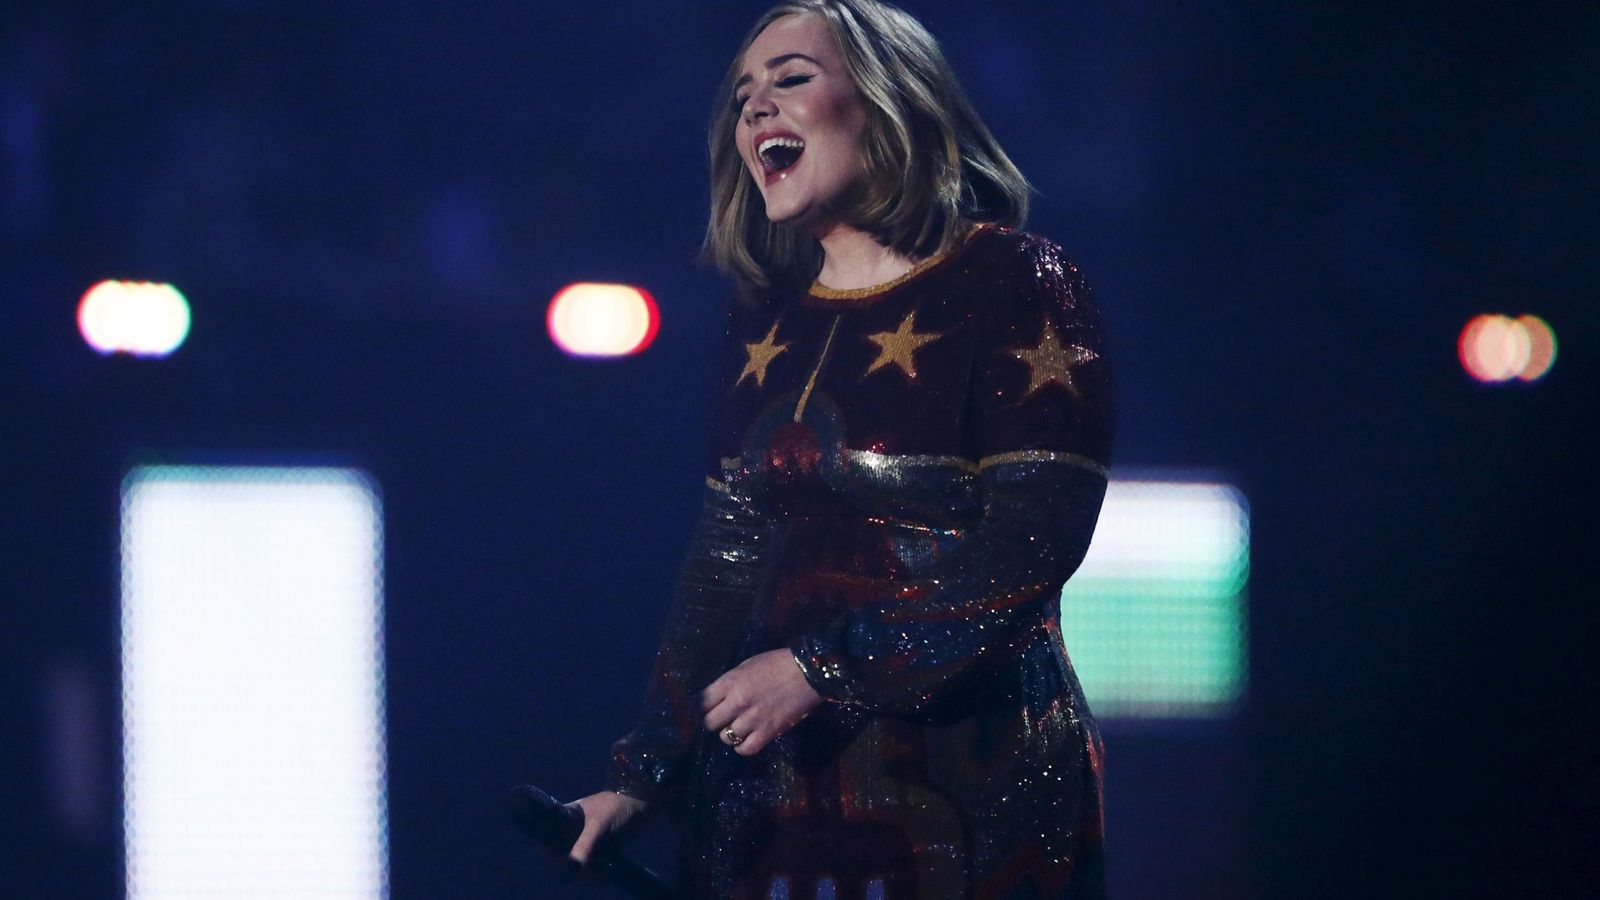 Foto: Adele en concierto en el Arena de Londres el pasado 24 de febrero. Foto: Reuters/Stefan Wermuth